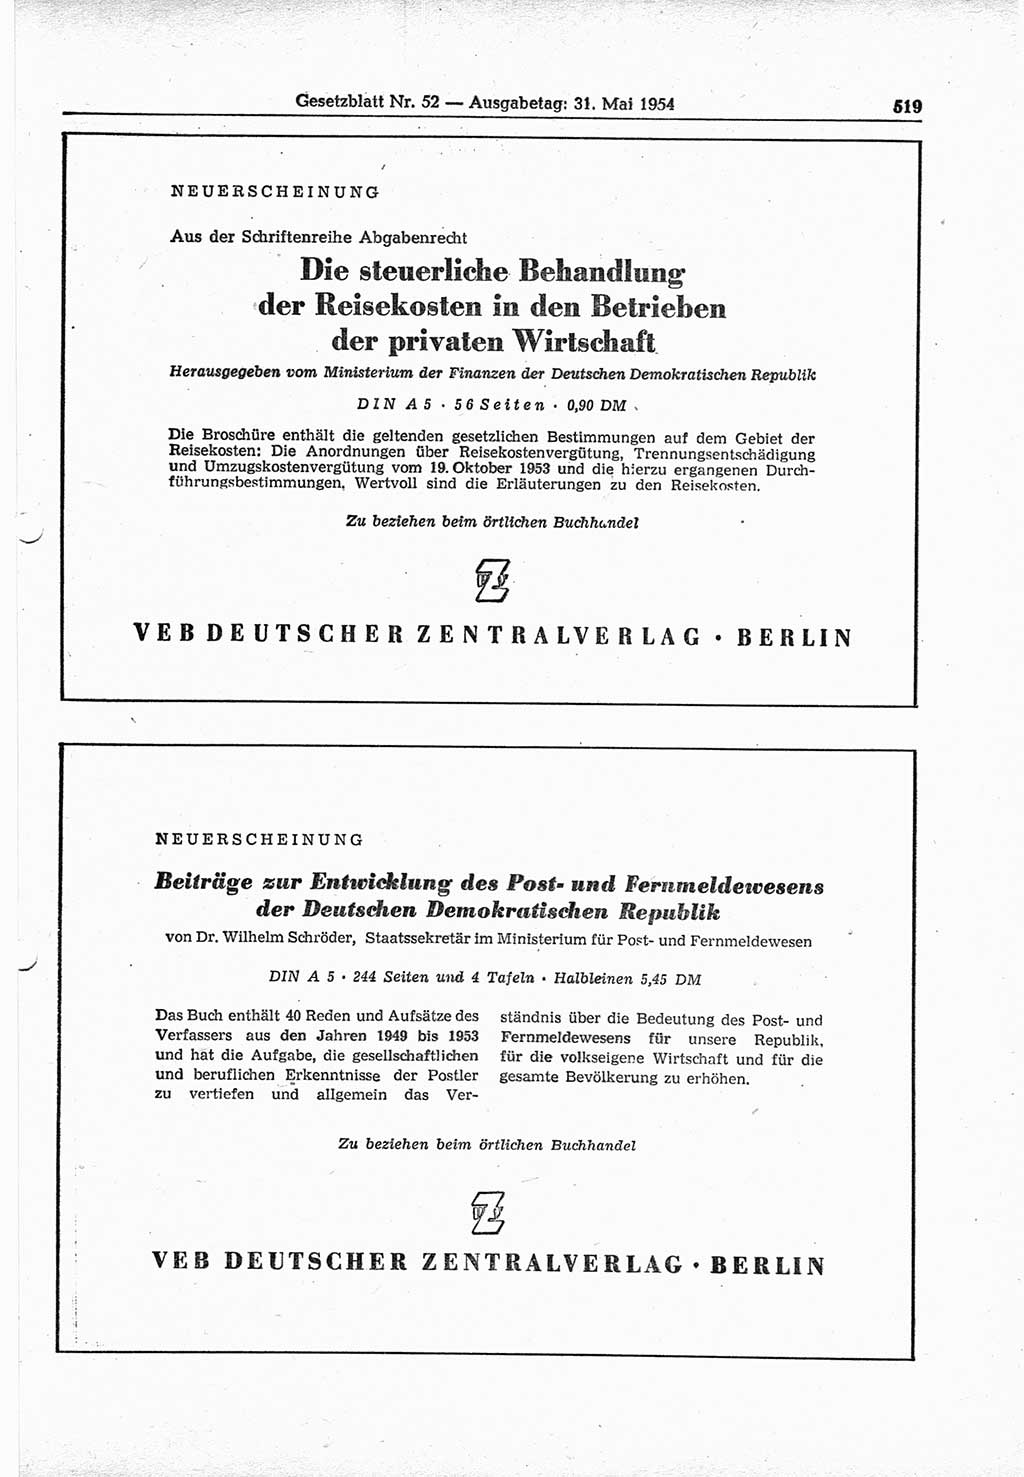 Gesetzblatt (GBl.) der Deutschen Demokratischen Republik (DDR) 1954, Seite 519 (GBl. DDR 1954, S. 519)